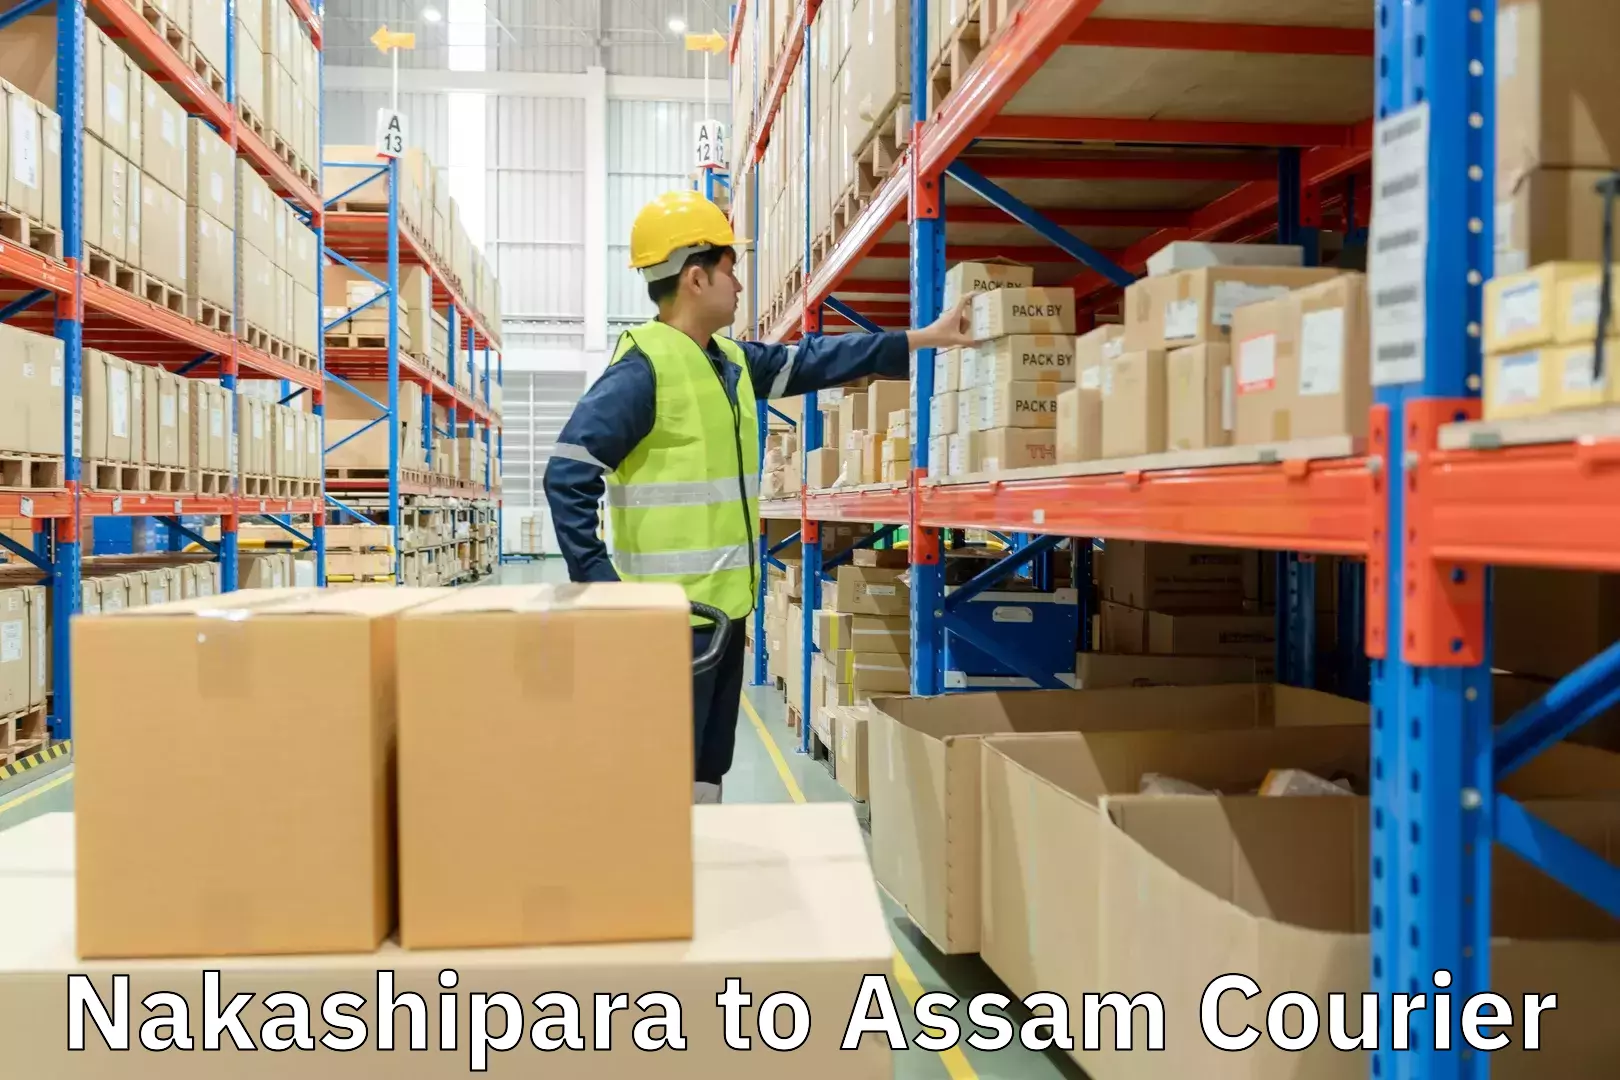 Efficient shipping operations Nakashipara to Assam